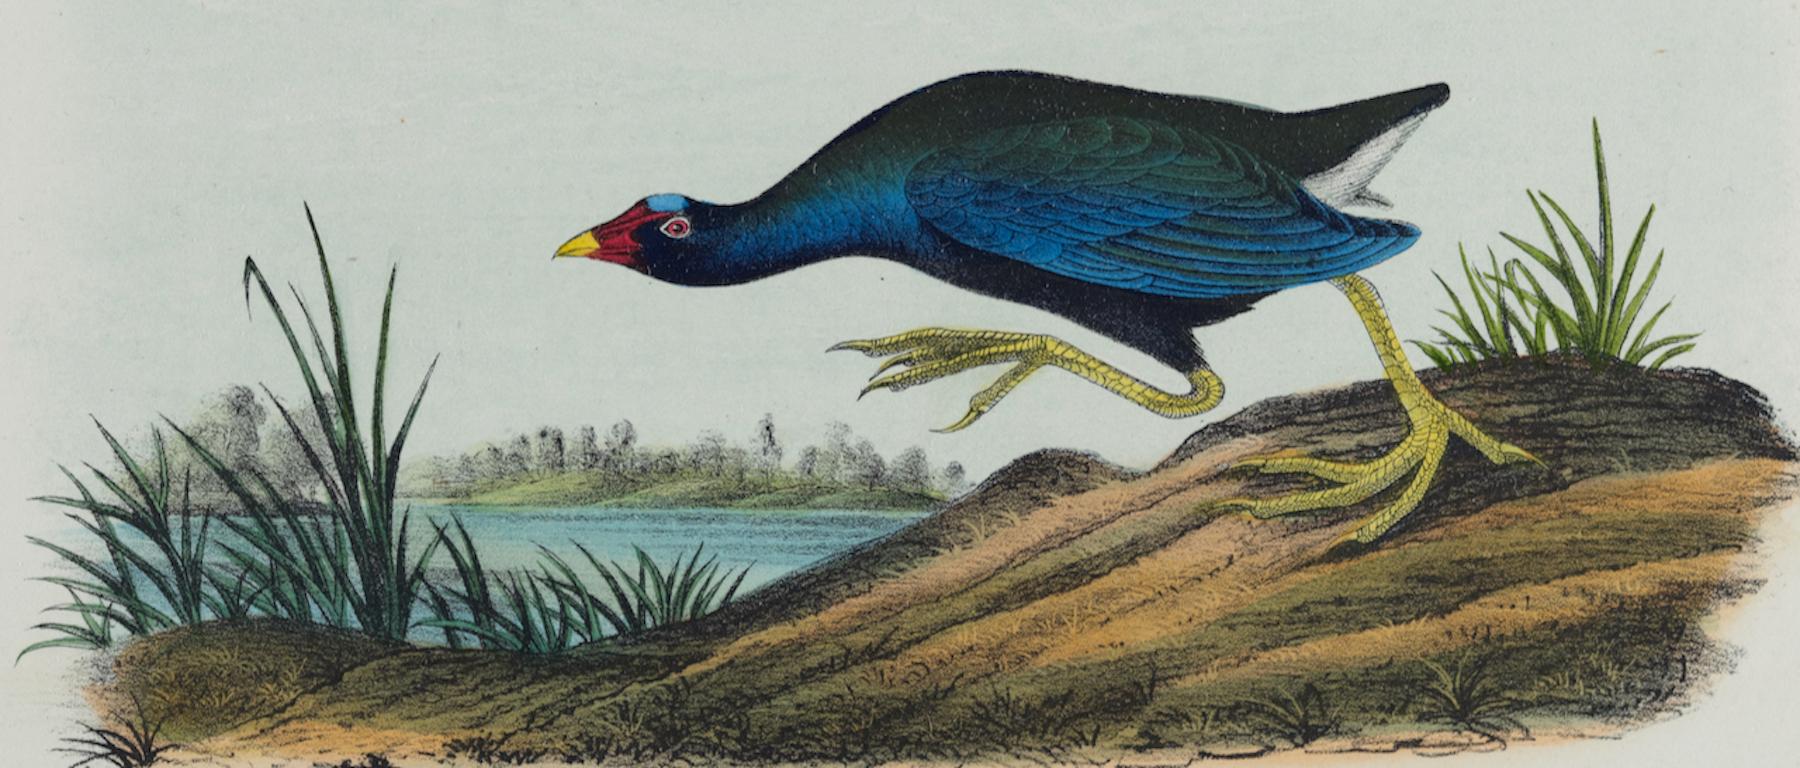 Gallinule pourpre : Une lithographie originale d'Audubon du 19ème siècle, coloriée à la main.  - Naturalisme Print par John James Audubon